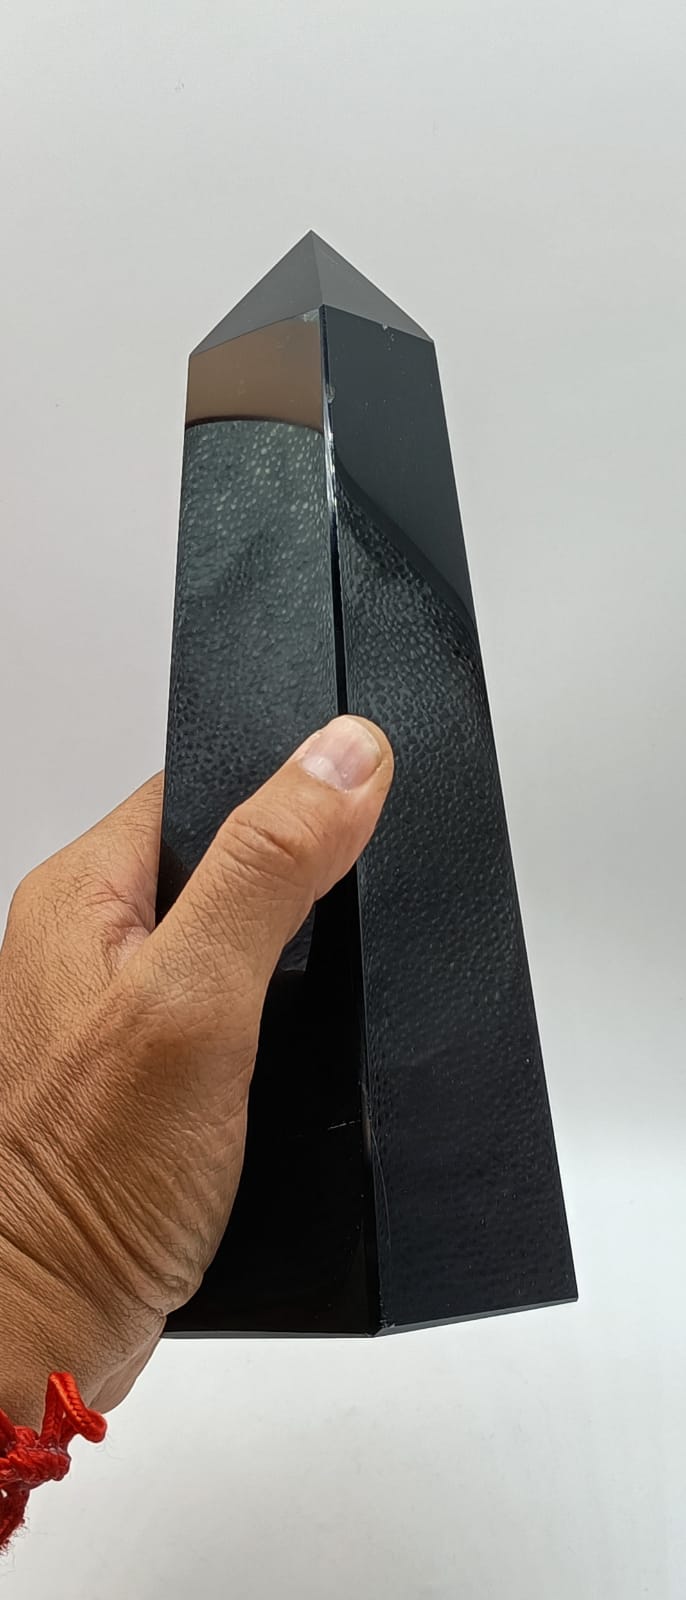 Black Obsidian Obelisk 1341 g Crystal Wellness